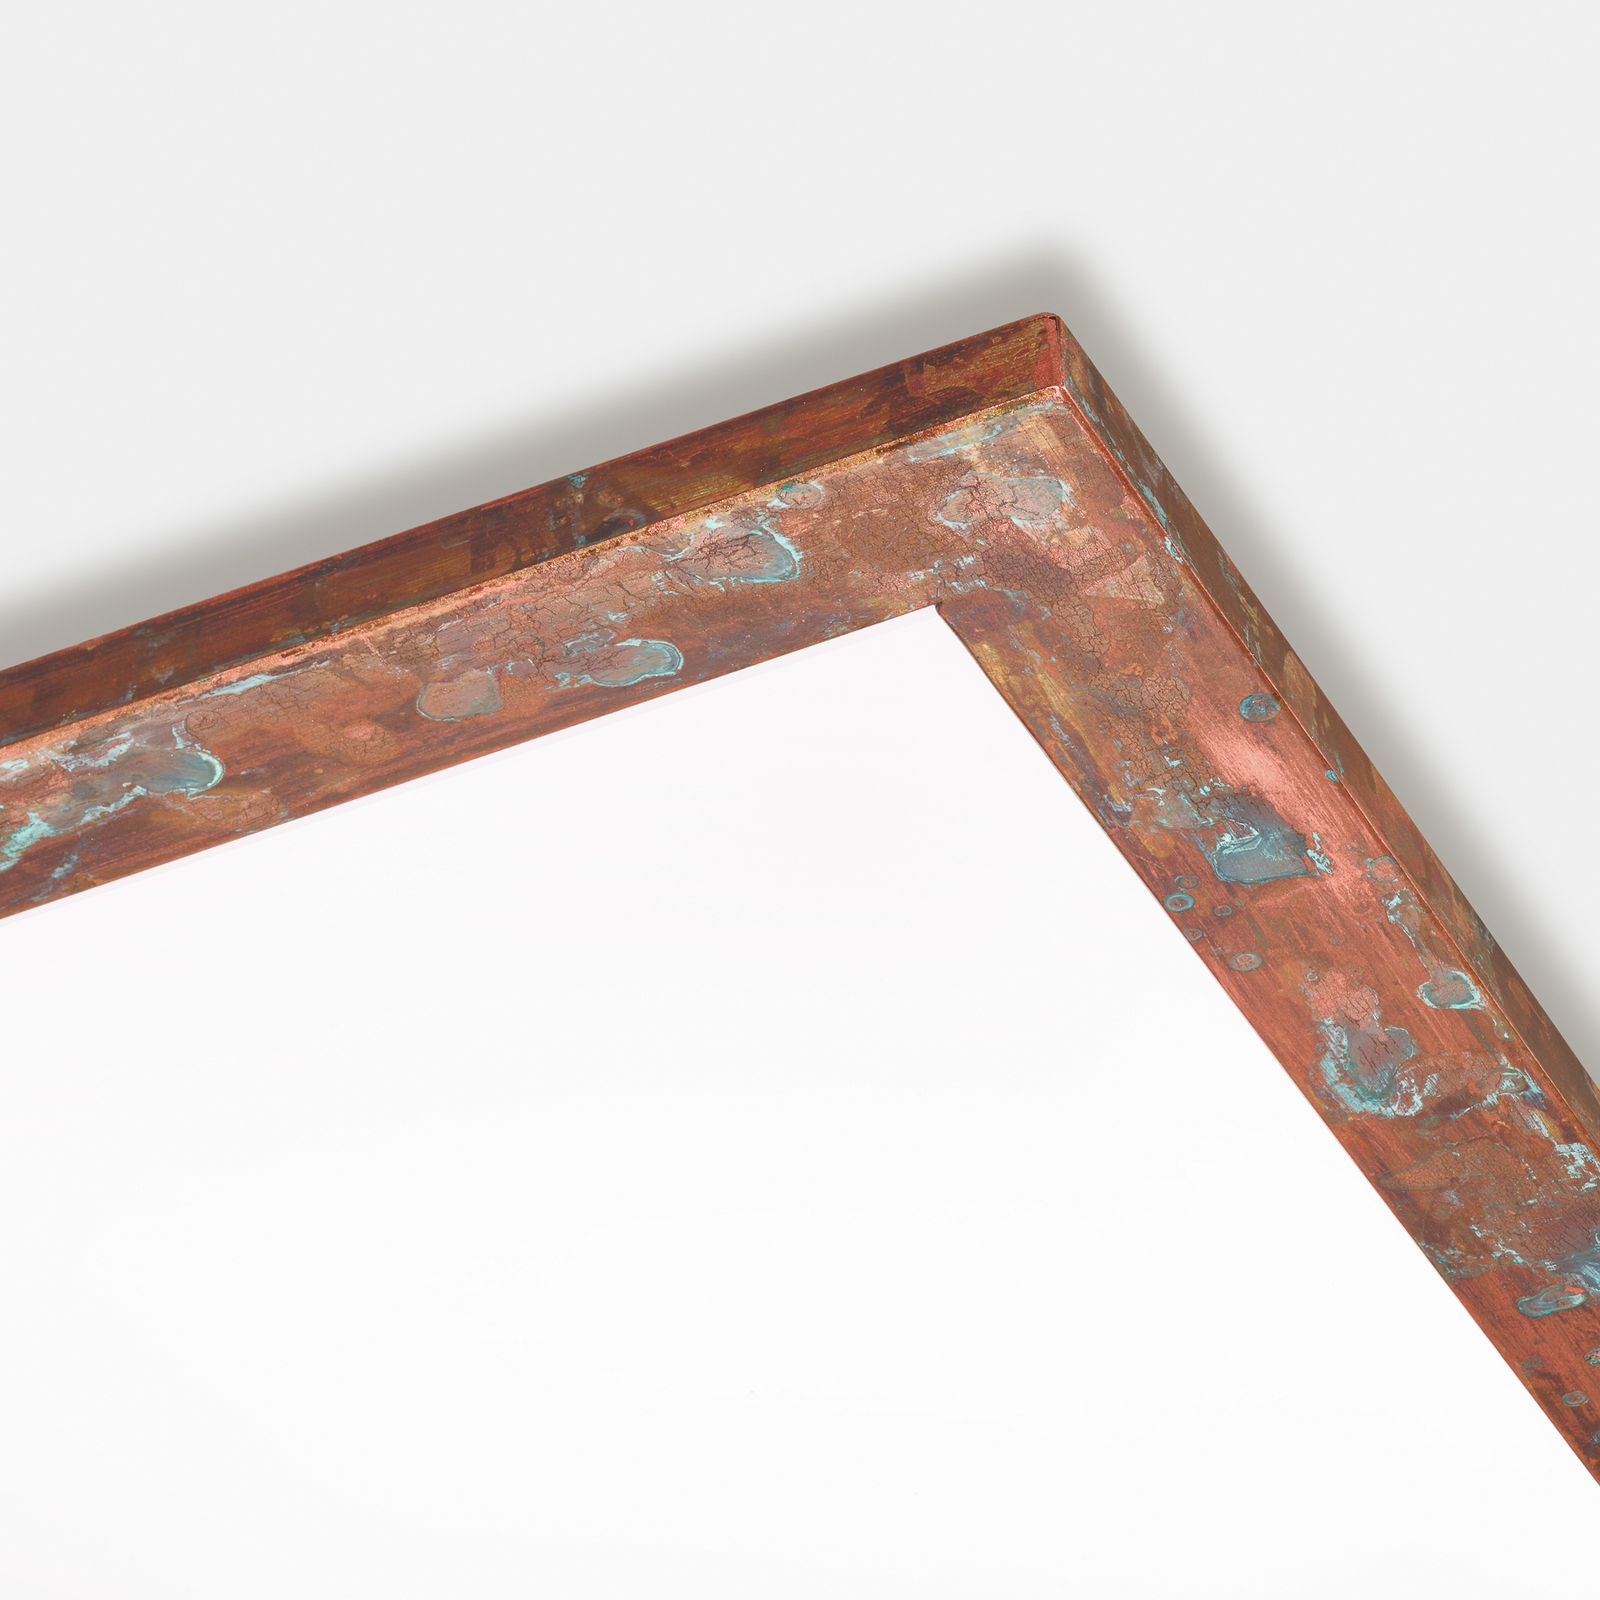 Quitani Aurinor LED panel, copper, 68 cm